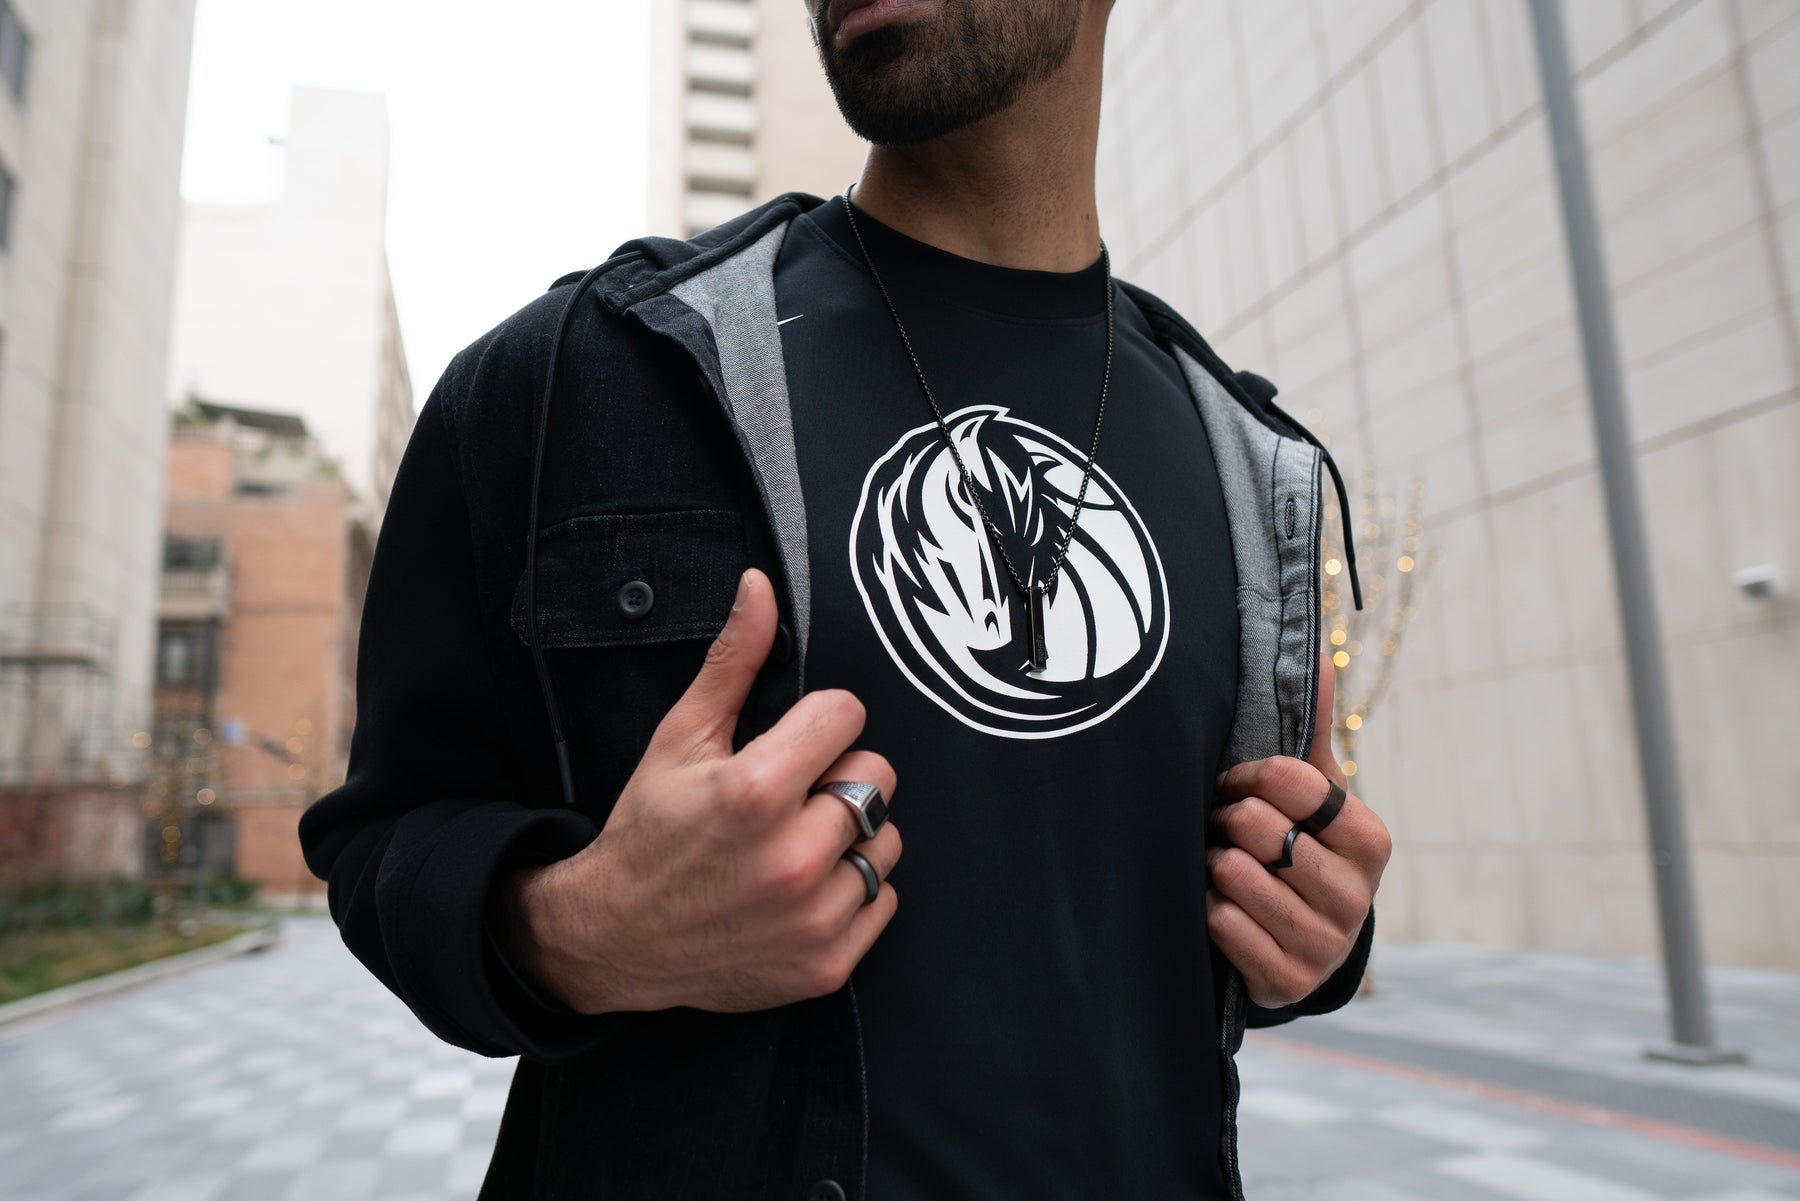 🔥🏀Nike NBA Dallas Mavericks Warm Up Shooting Shirt Player Issued 2X  AV0928-480